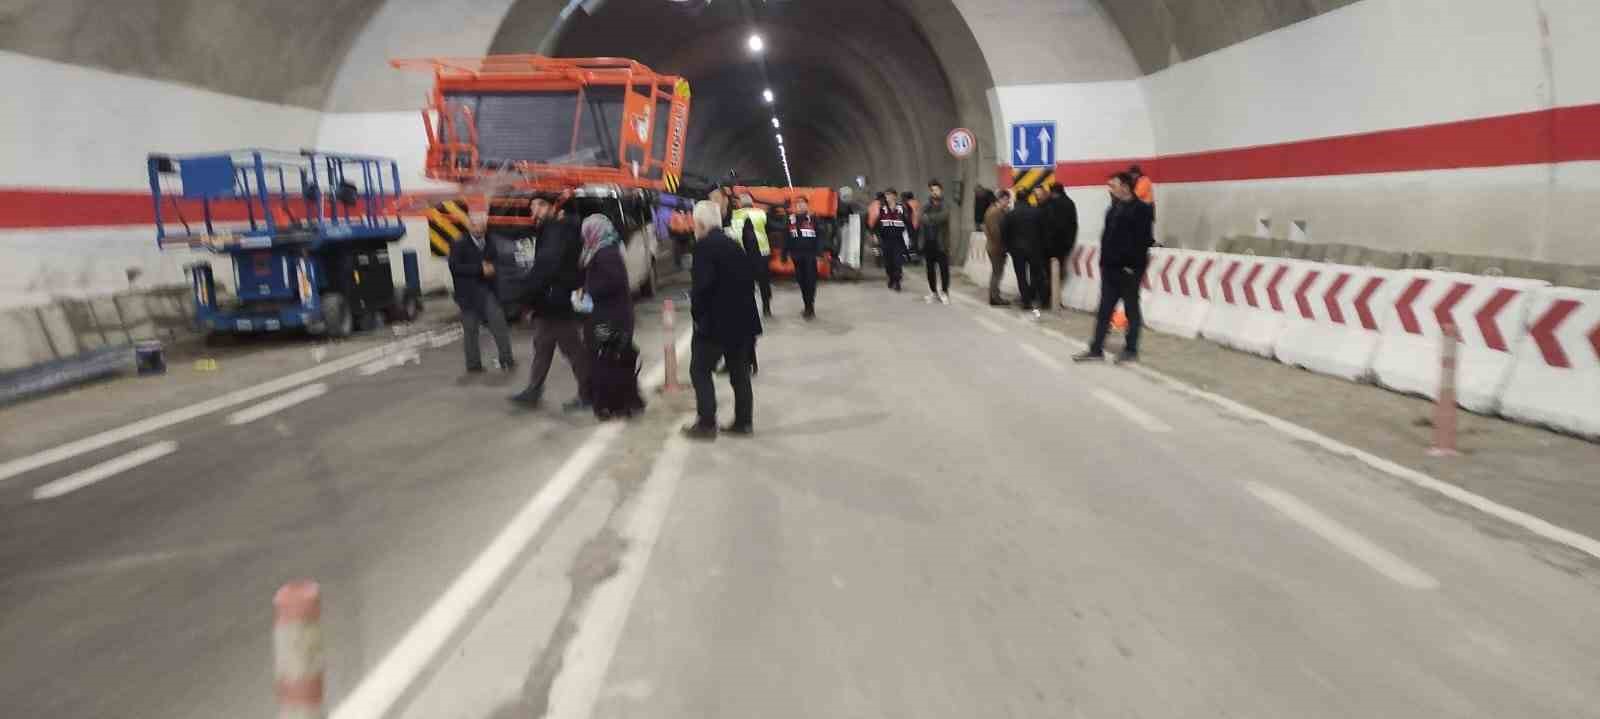 Artvin’de yolcu minibüsü tünel içinde kaza yaptı: 7 yaralı
